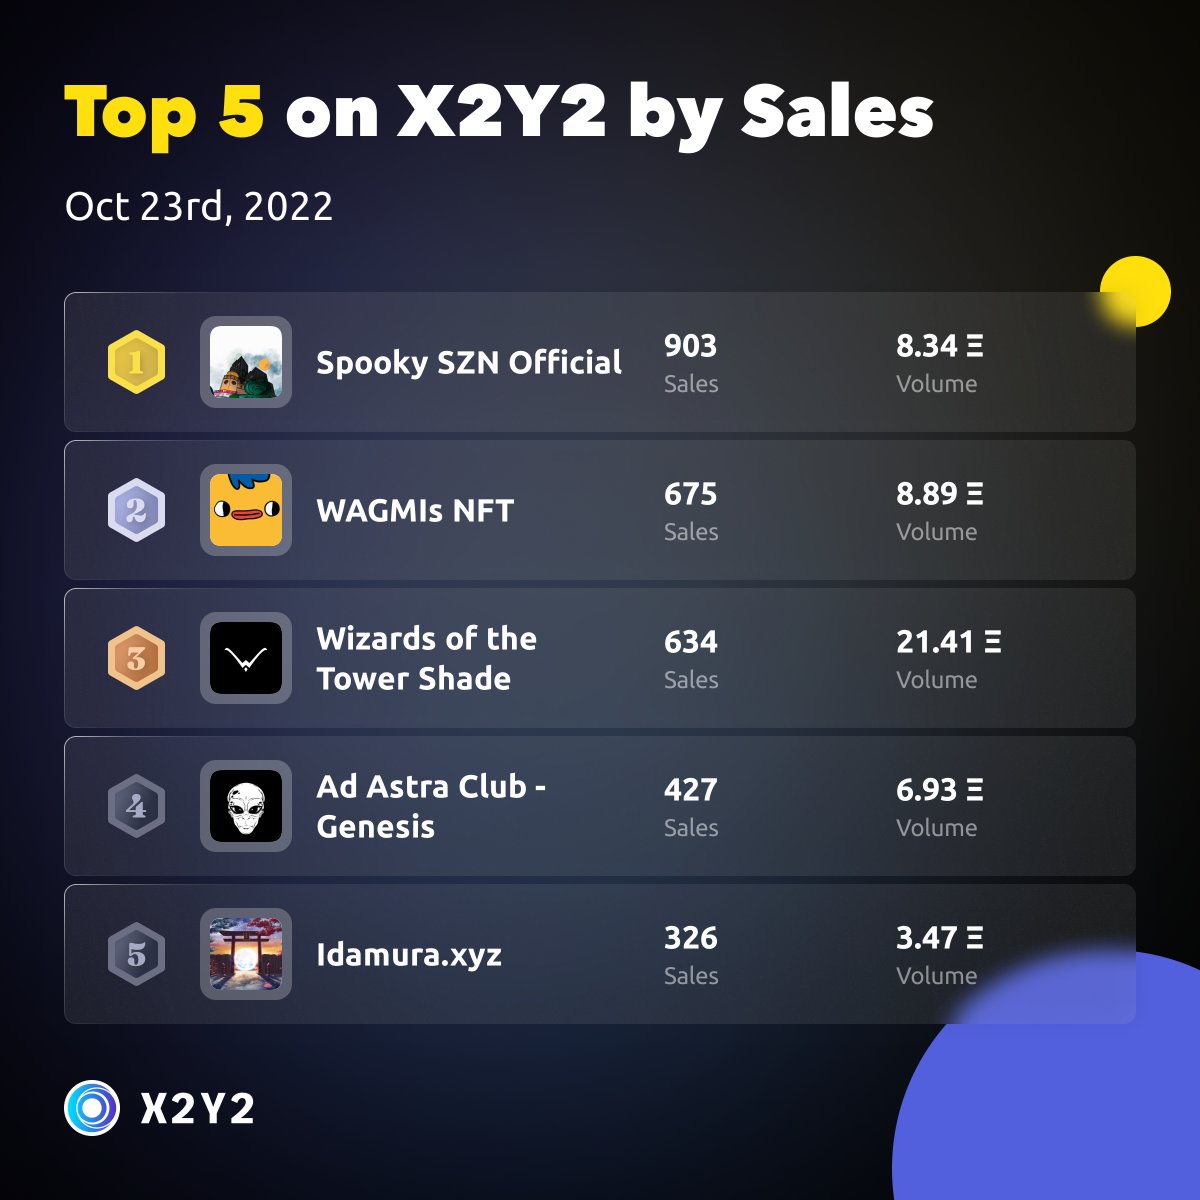 Top 5 projects on #X2Y2 by Sales in the last 24 hours 🎉 - 1 Spooky SZN Official @SPOOKY_SZN_NFT - 2 WAGMIs NFT @wagmisnft - 3 Wizards of the Tower Shade @wizardsoftower - 4 Ad Astra Club - Genesis @adastraclubxyz - 5 Idamura.xyz @Idamura_xyz x2y2.io/ranking?catego…